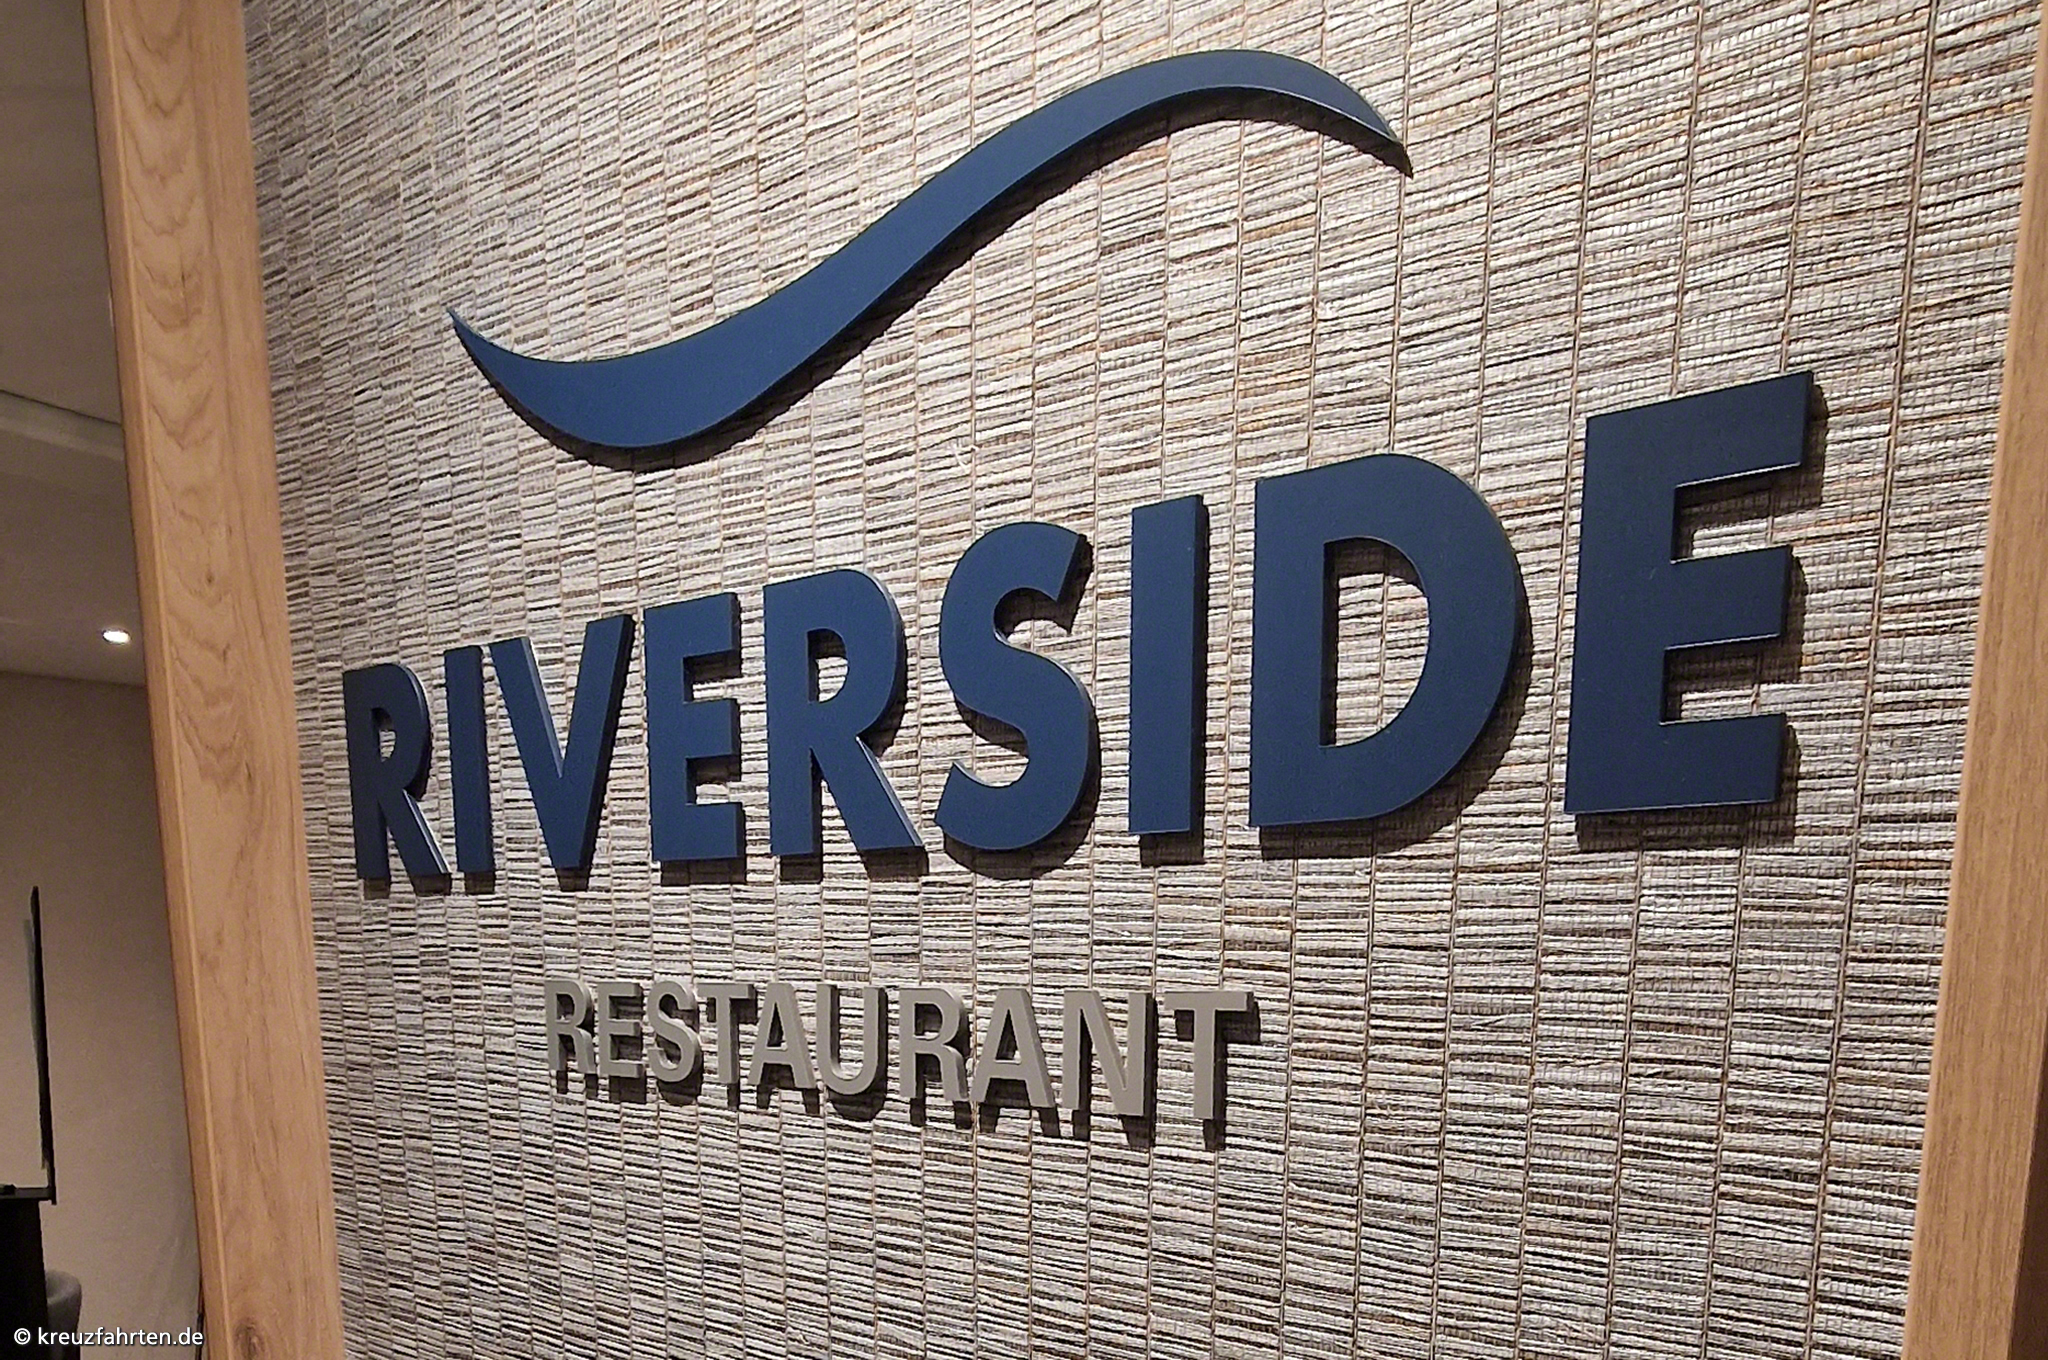 Riverside Restaurant